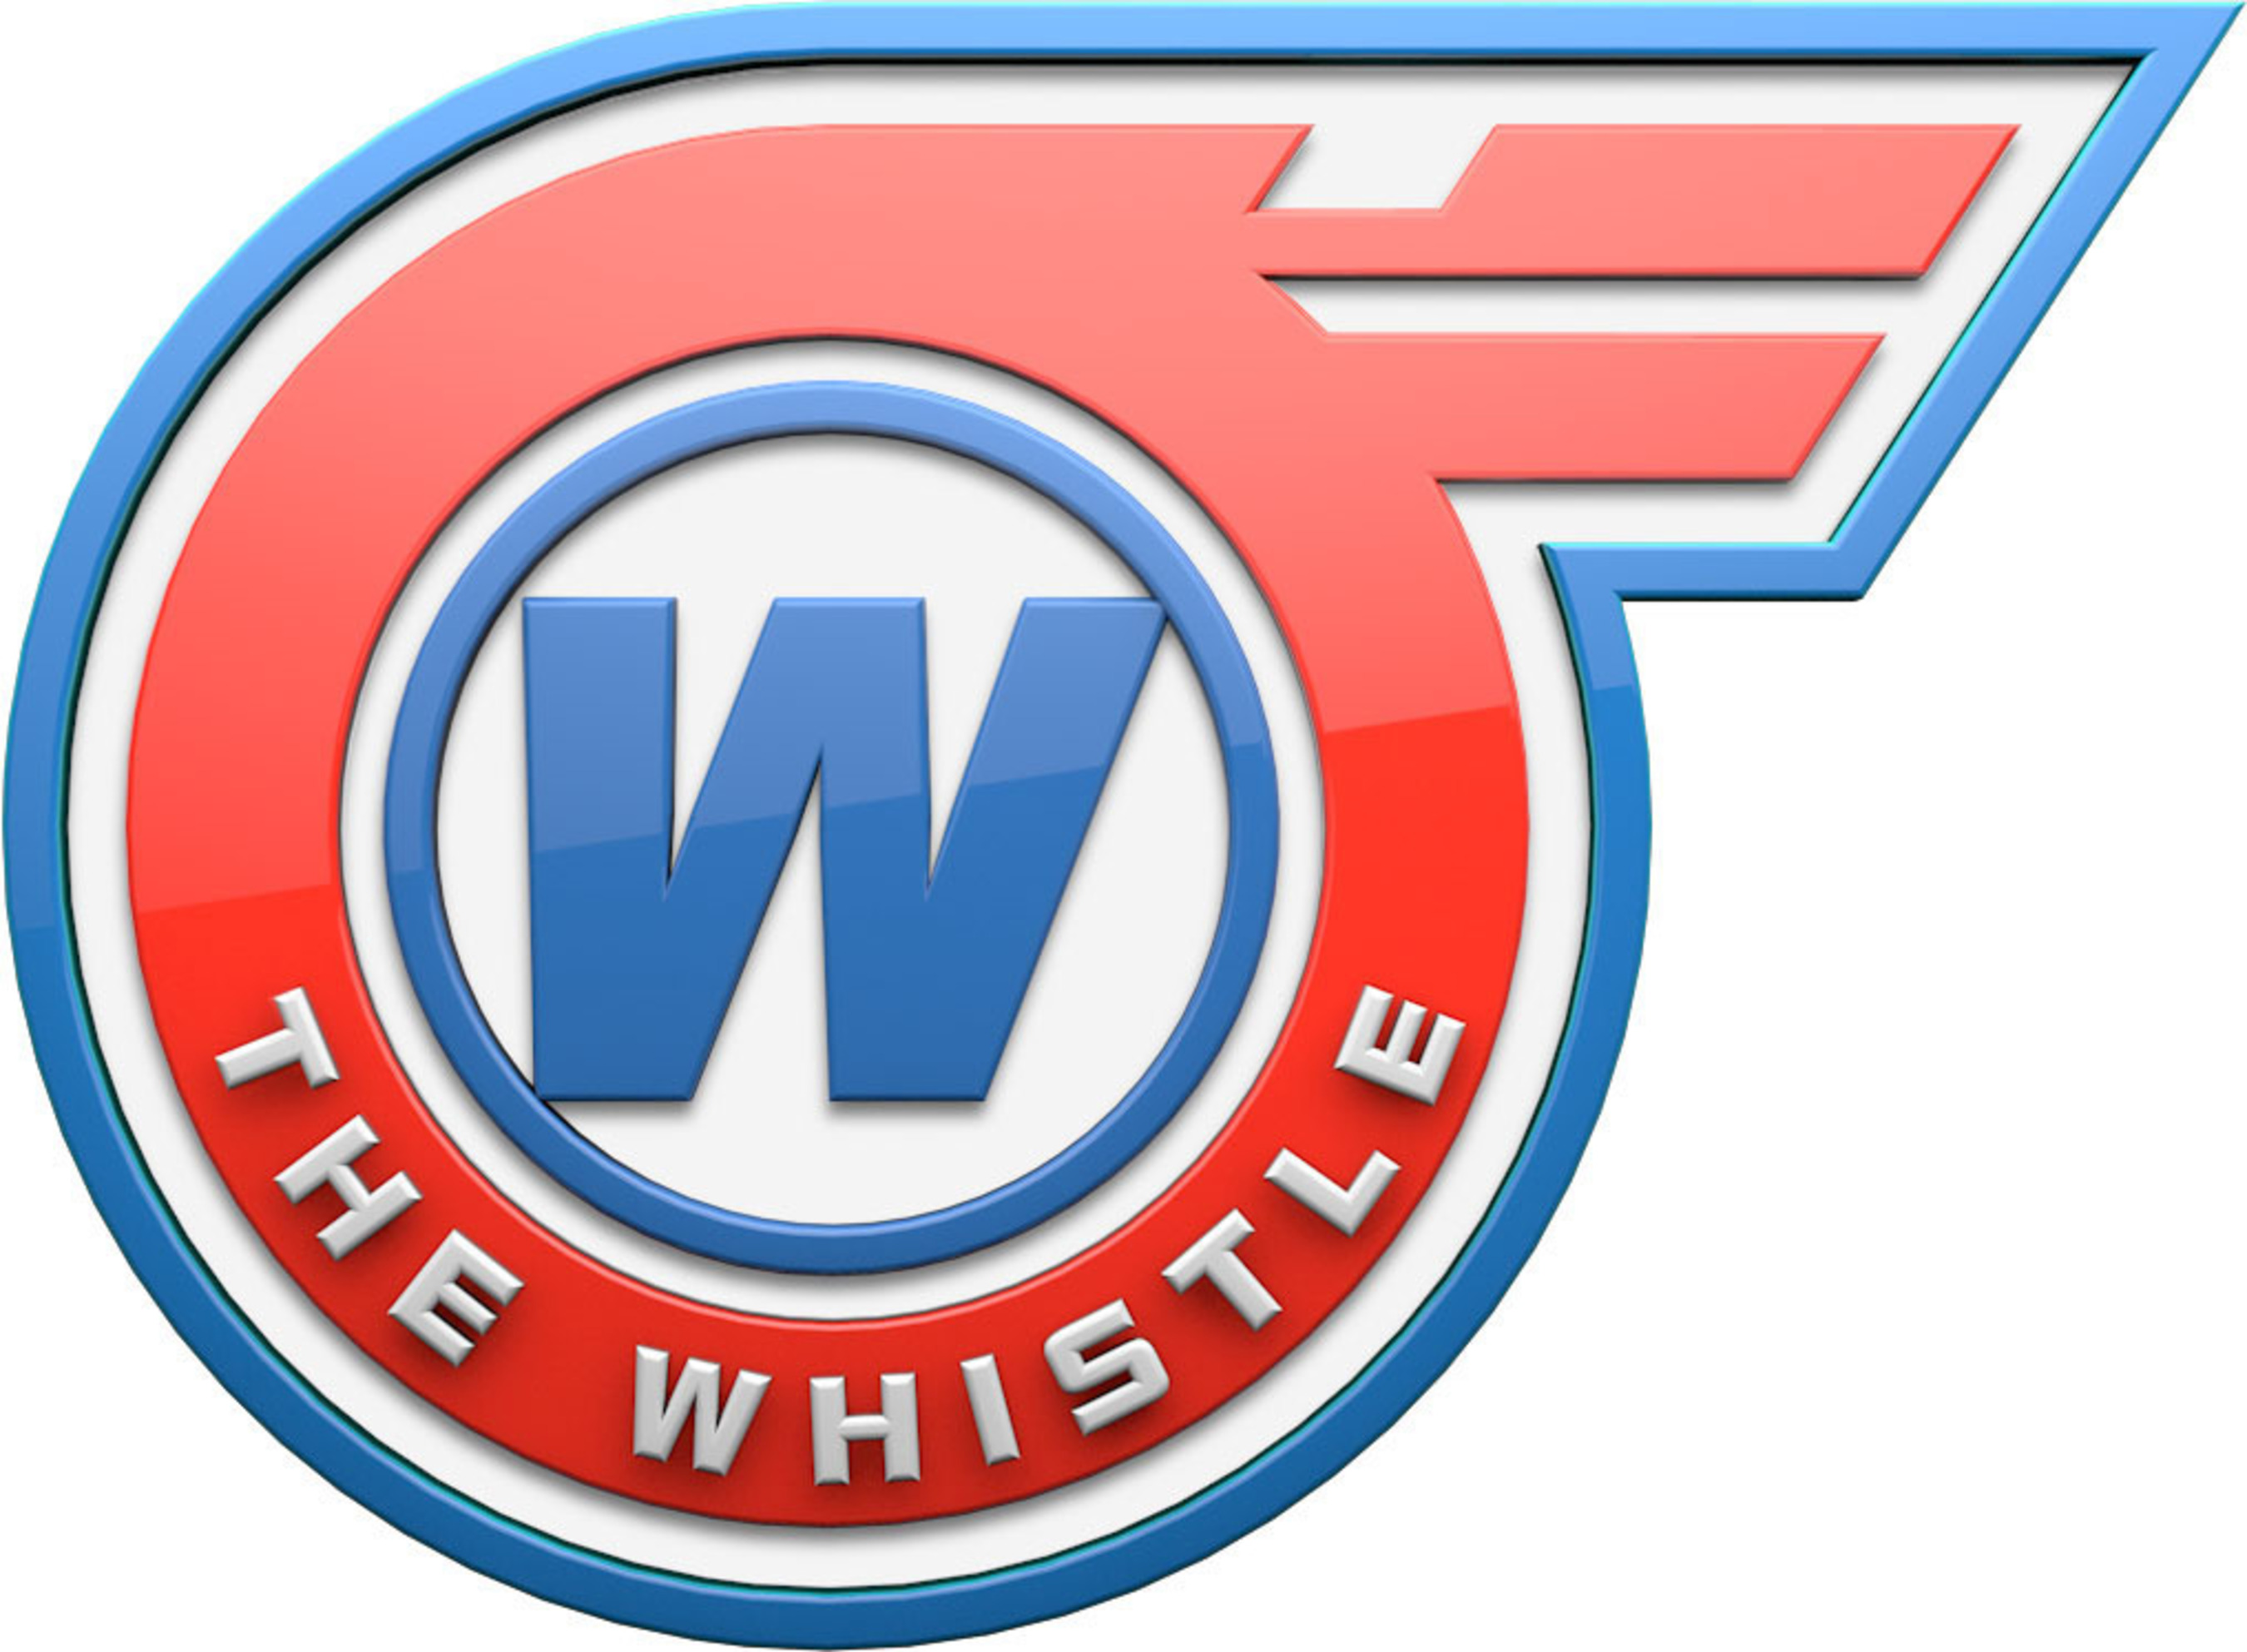 The Whistle Logo. (PRNewsFoto/The Whistle) (PRNewsFoto/THE WHISTLE)